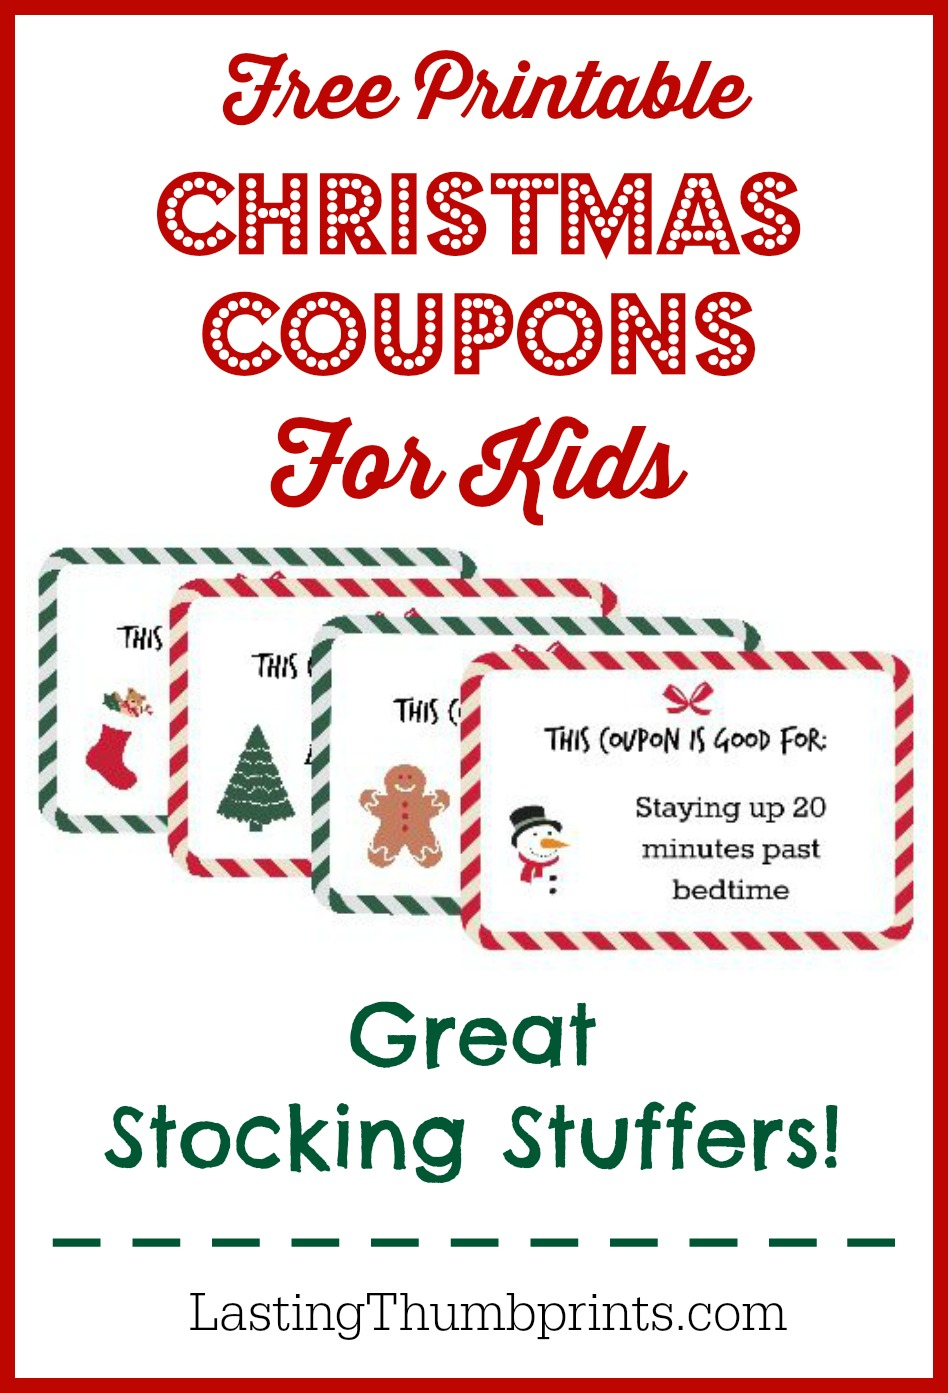 Christmas Coupons For Kids - Free Printable! - Free Printable Coupons 2014